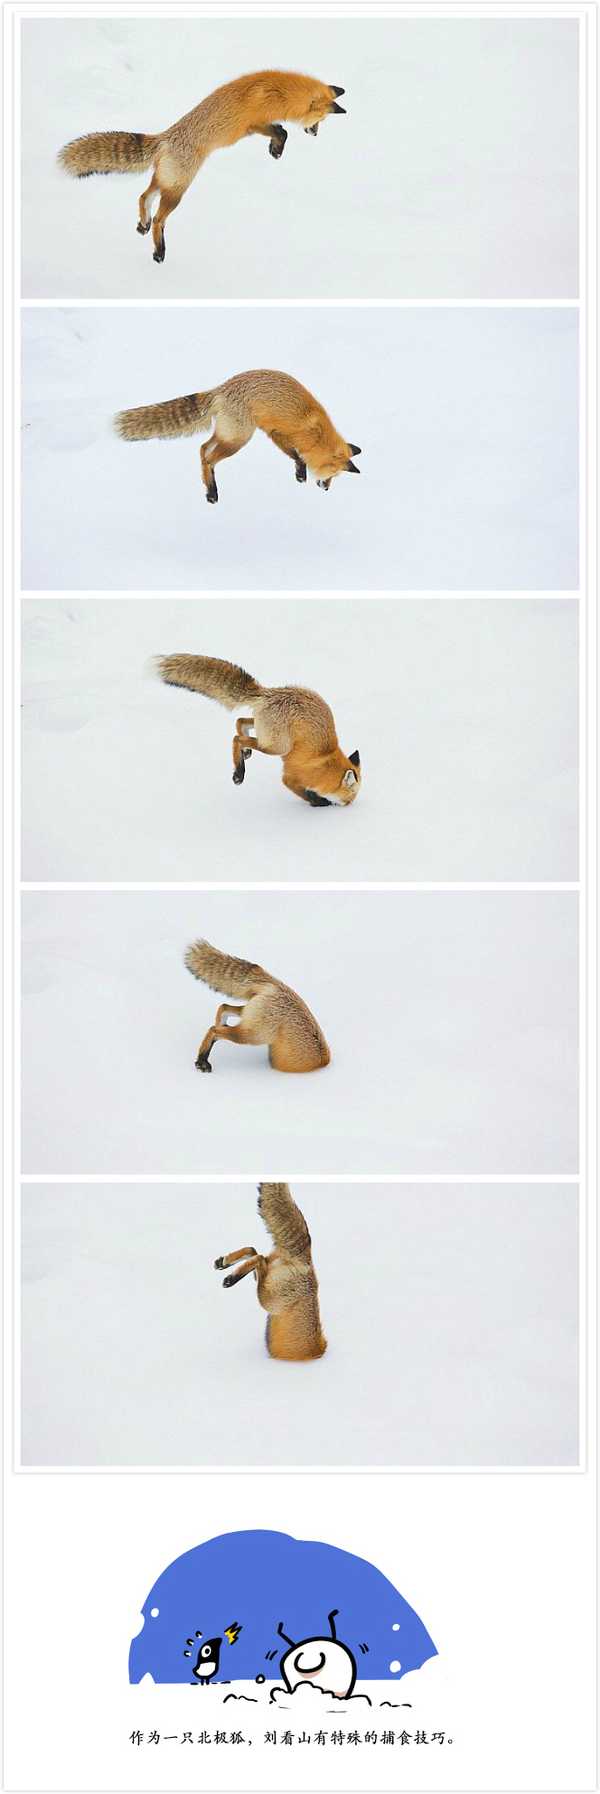 刘看山: 作为北极狐,冬季要有特殊的捕食技巧.